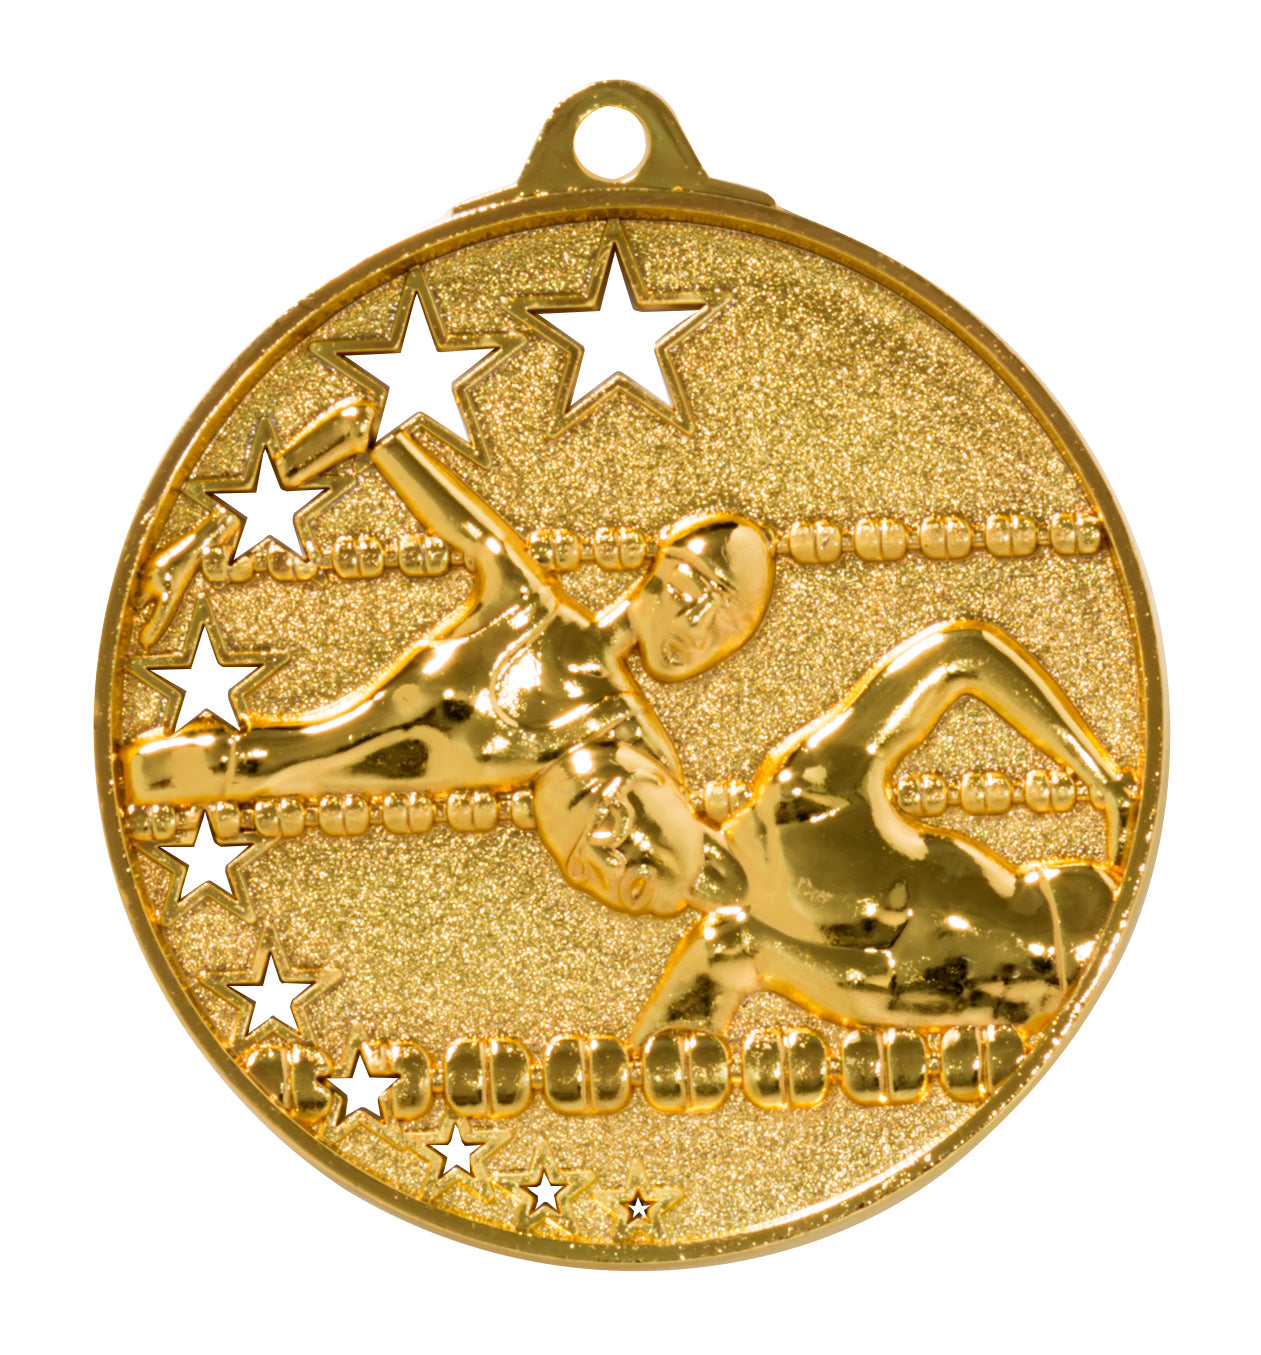 Eine goldene Schwimmmedaille, Schwimmen Medaillen Halle 52 mm PK79224 von Pomeki, mit exklusivem Design mit zwei Schwimmern und mehreren Sternen.